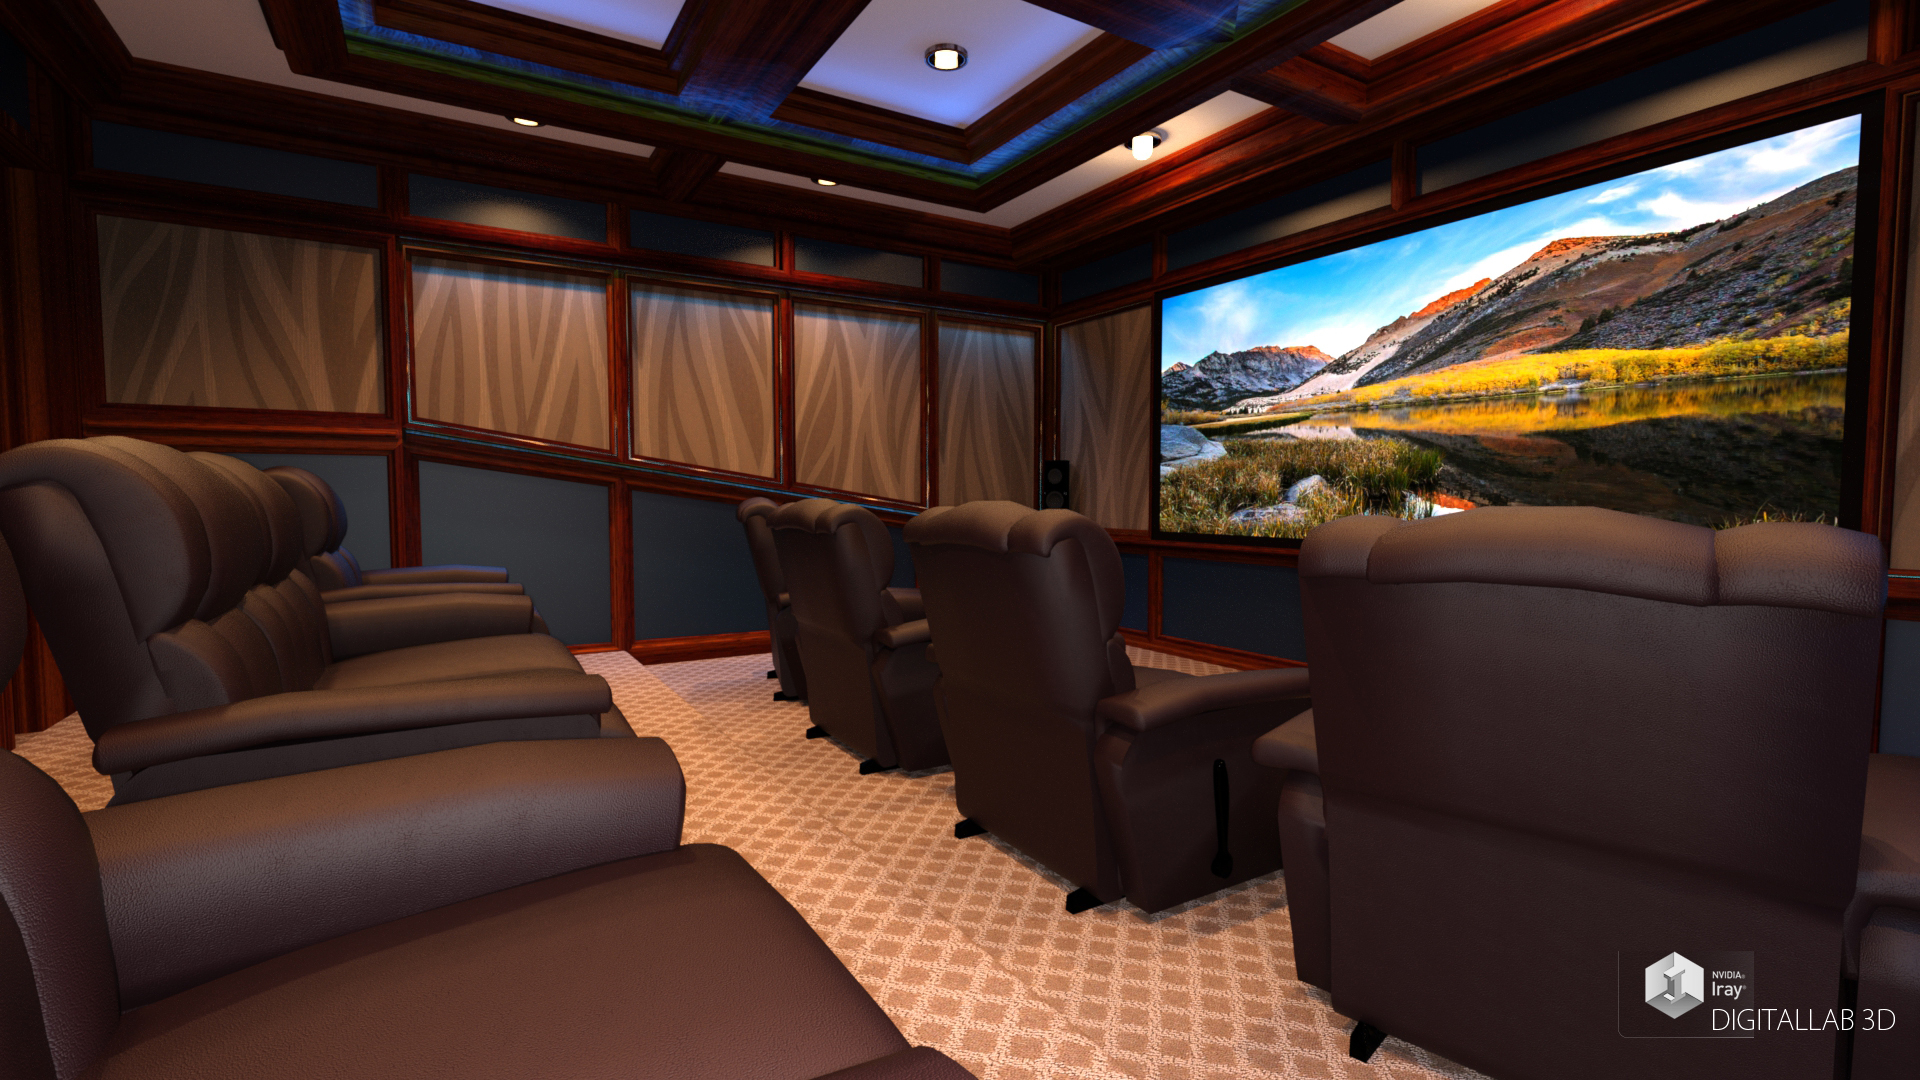 Digitallab3d Home Theater by: Digitallab3D, 3D Models by Daz 3D